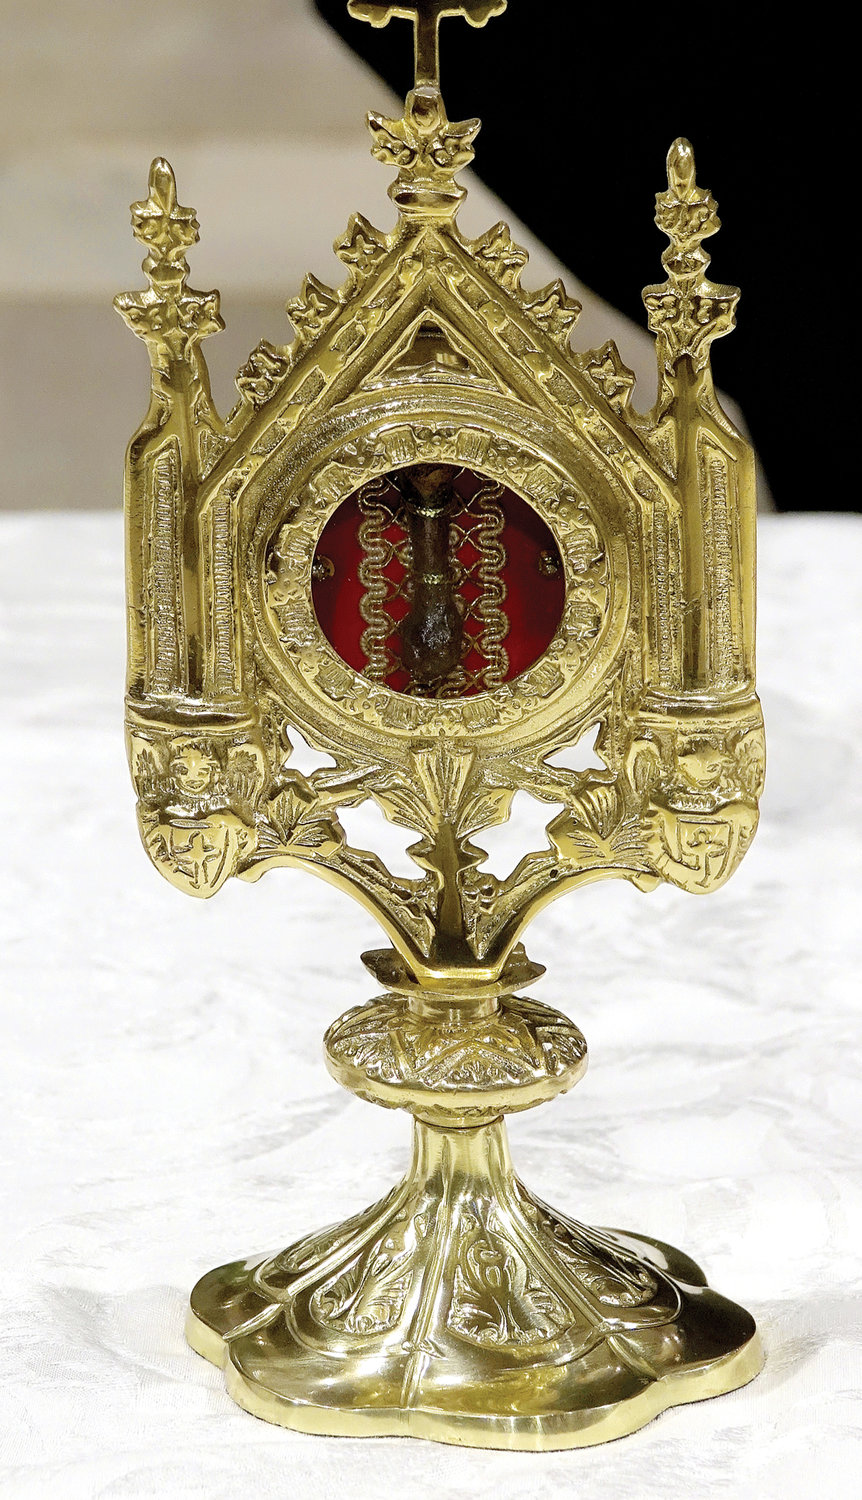 La misa presentaba una reliquia de primera clase del Beato José Gregorio Hernández, quien fue un doctor venezolano.